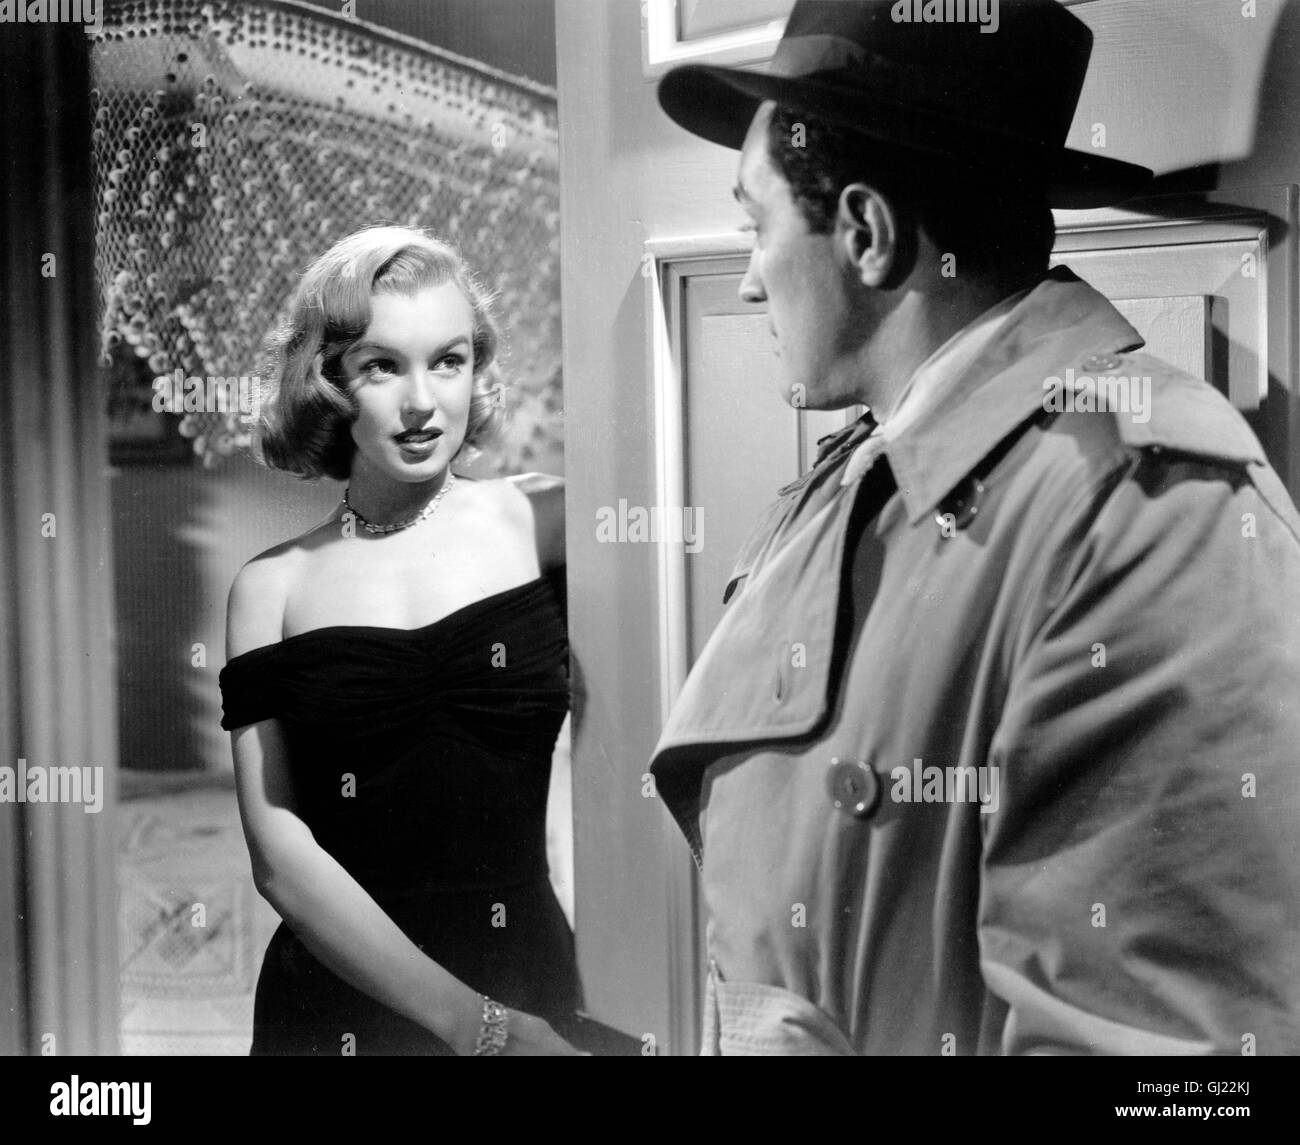 ASPHALT DSCHUNGEL The Asphalt Jungle USA 1950 - John Huston Nach einem raffinierte Juwelenraub versuchen zwei Gangster sich getrennt in Sicherheit zu bringen. Einer wird jedoch von der Polizei gestellt, der andere stirbt auf der Flucht. Nur der eigentliche Drahtzieher, als ehrenwerter Bürger bestens getarnt, kommt ungestraft davon. In John Hustons Kriminalfilm, der erstmals aus der Sicht des Gangsters erzählt wird, ist die damals 23-jährige Marilyn Monroe in einer kleinen, aber bemerkenswerten Rolle zu sehen. Szene mit MARILYN MONROE als Angela Regie: John Huston aka. The Asphalt Jungle Stock Photo